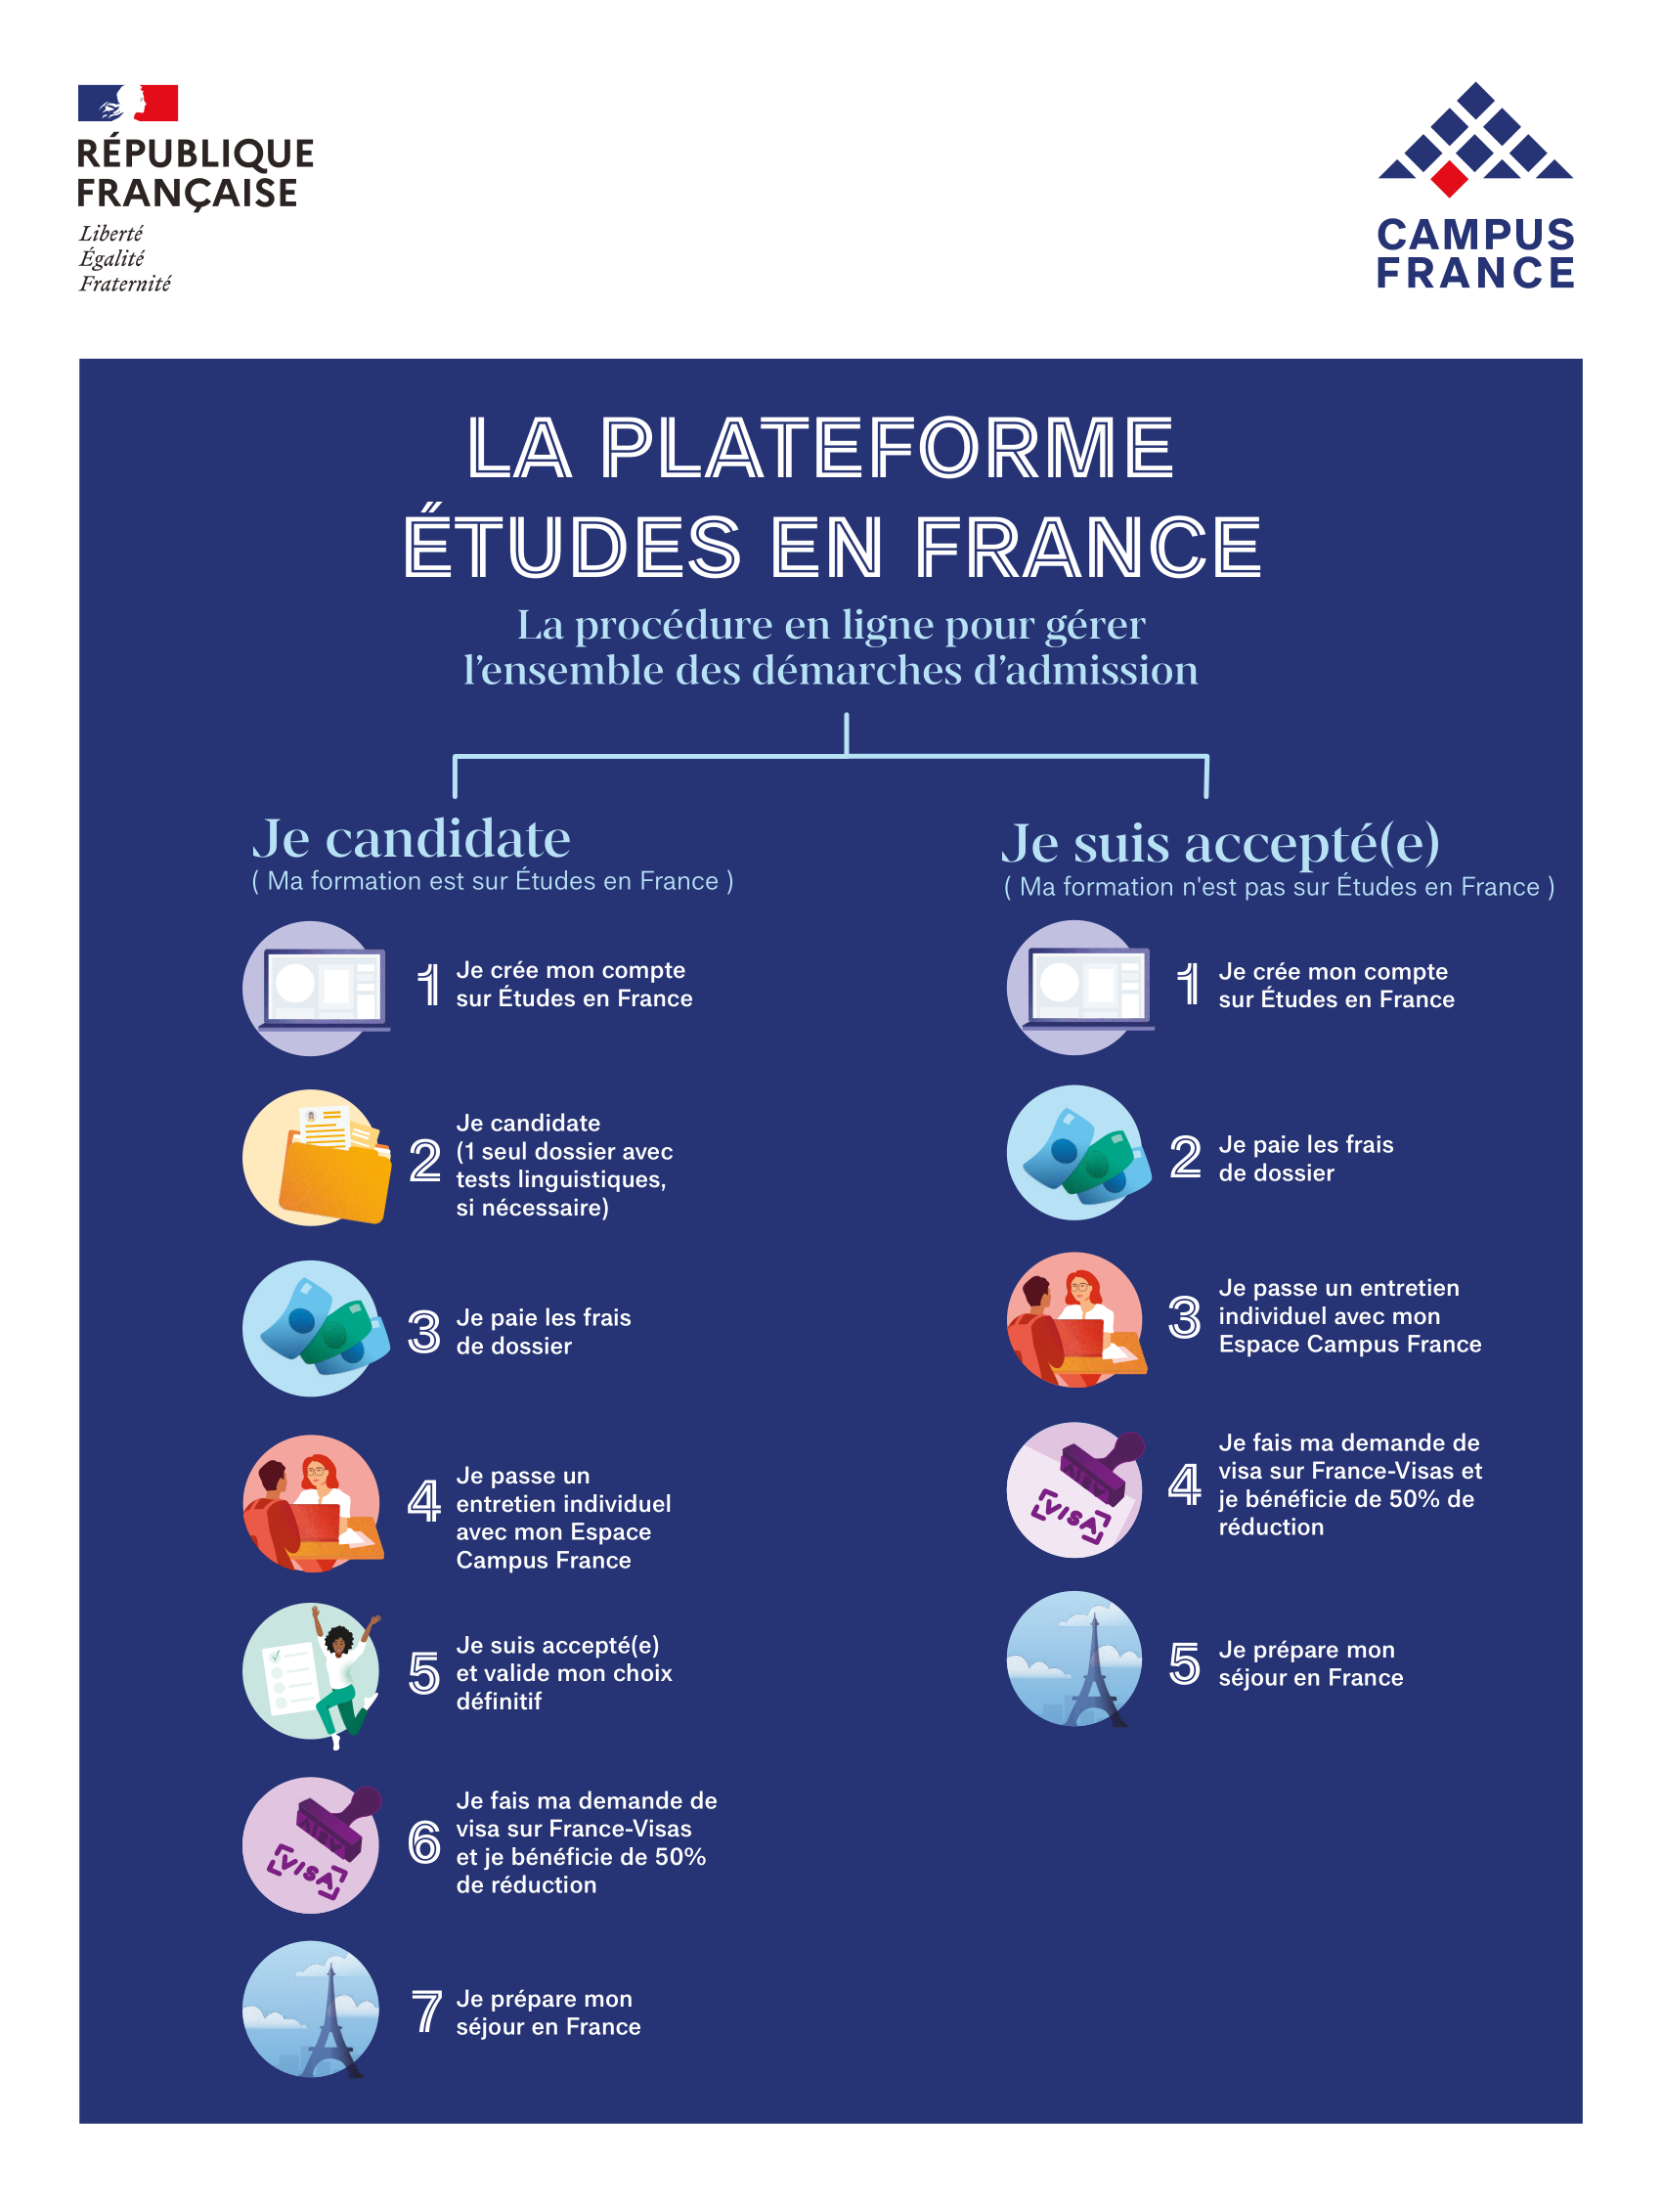 La plateforme Études en France